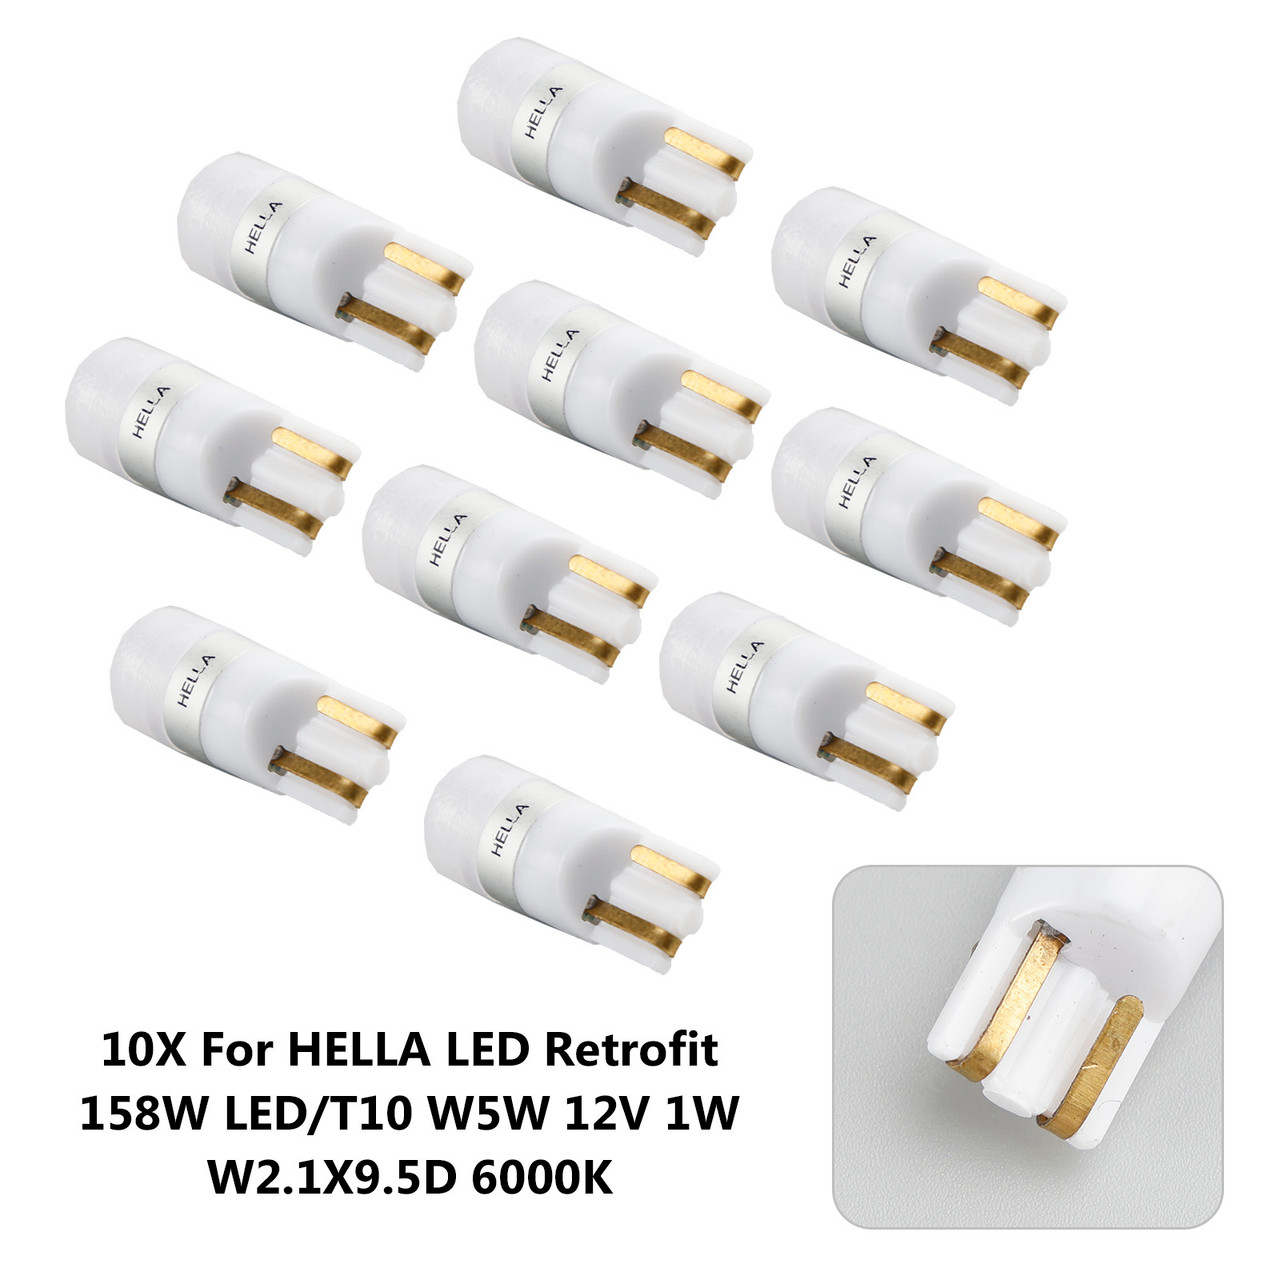 10X For HELLA LED Retrofit 158W LED/T10 W5W 12V 1W W2.1X9.5D 6000K